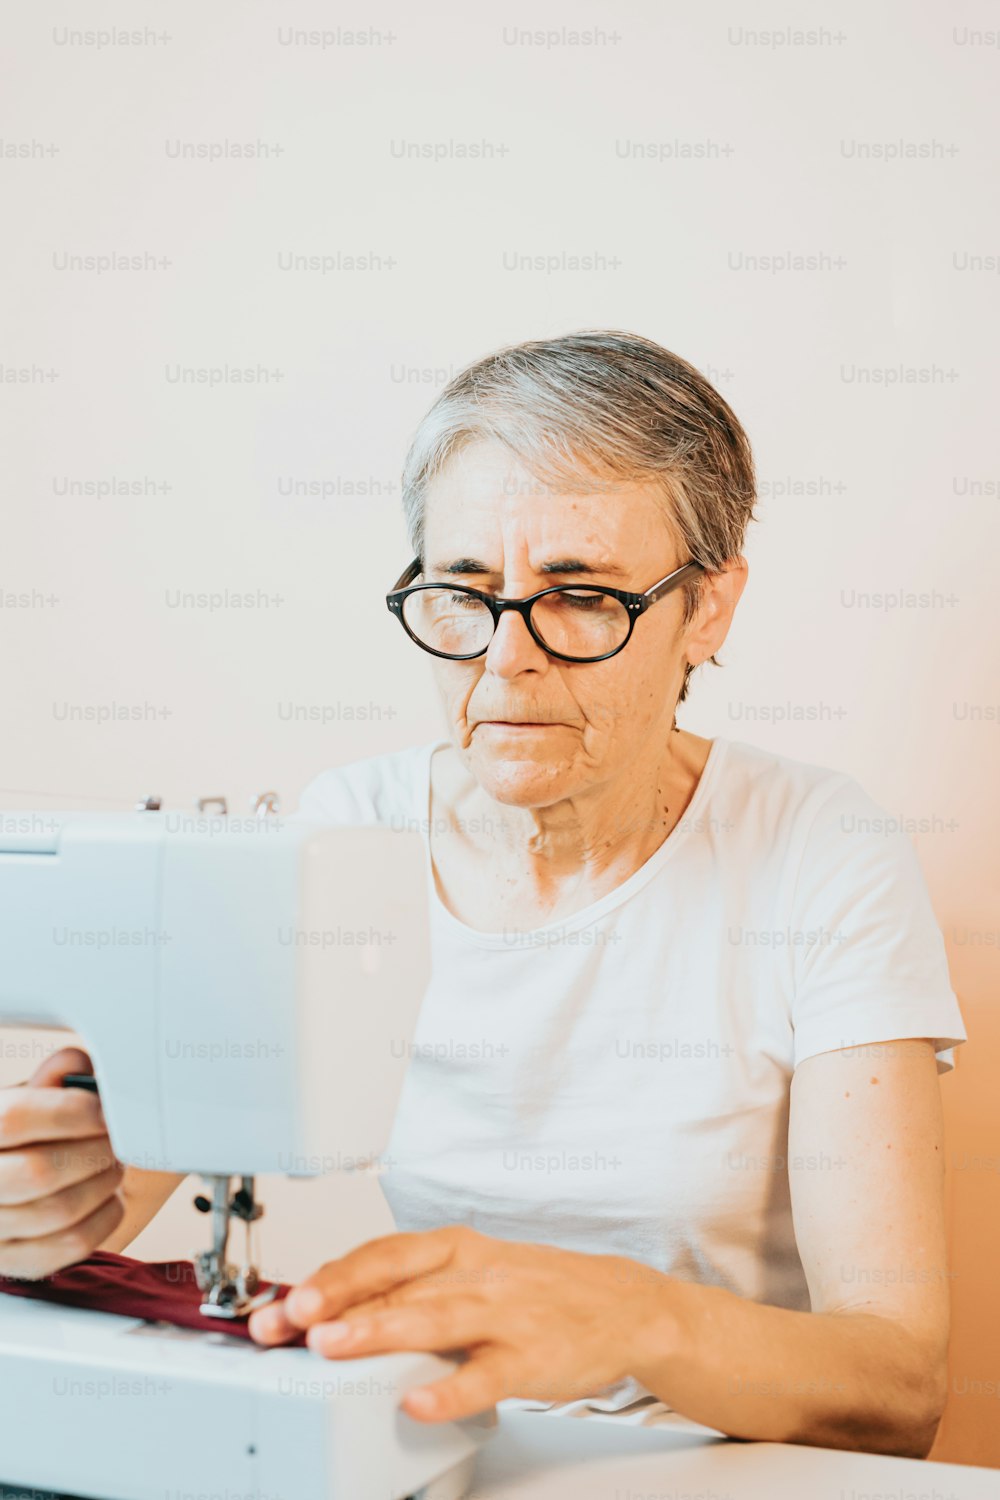 나이 든 여자가 재봉틀을 사용하고 있다